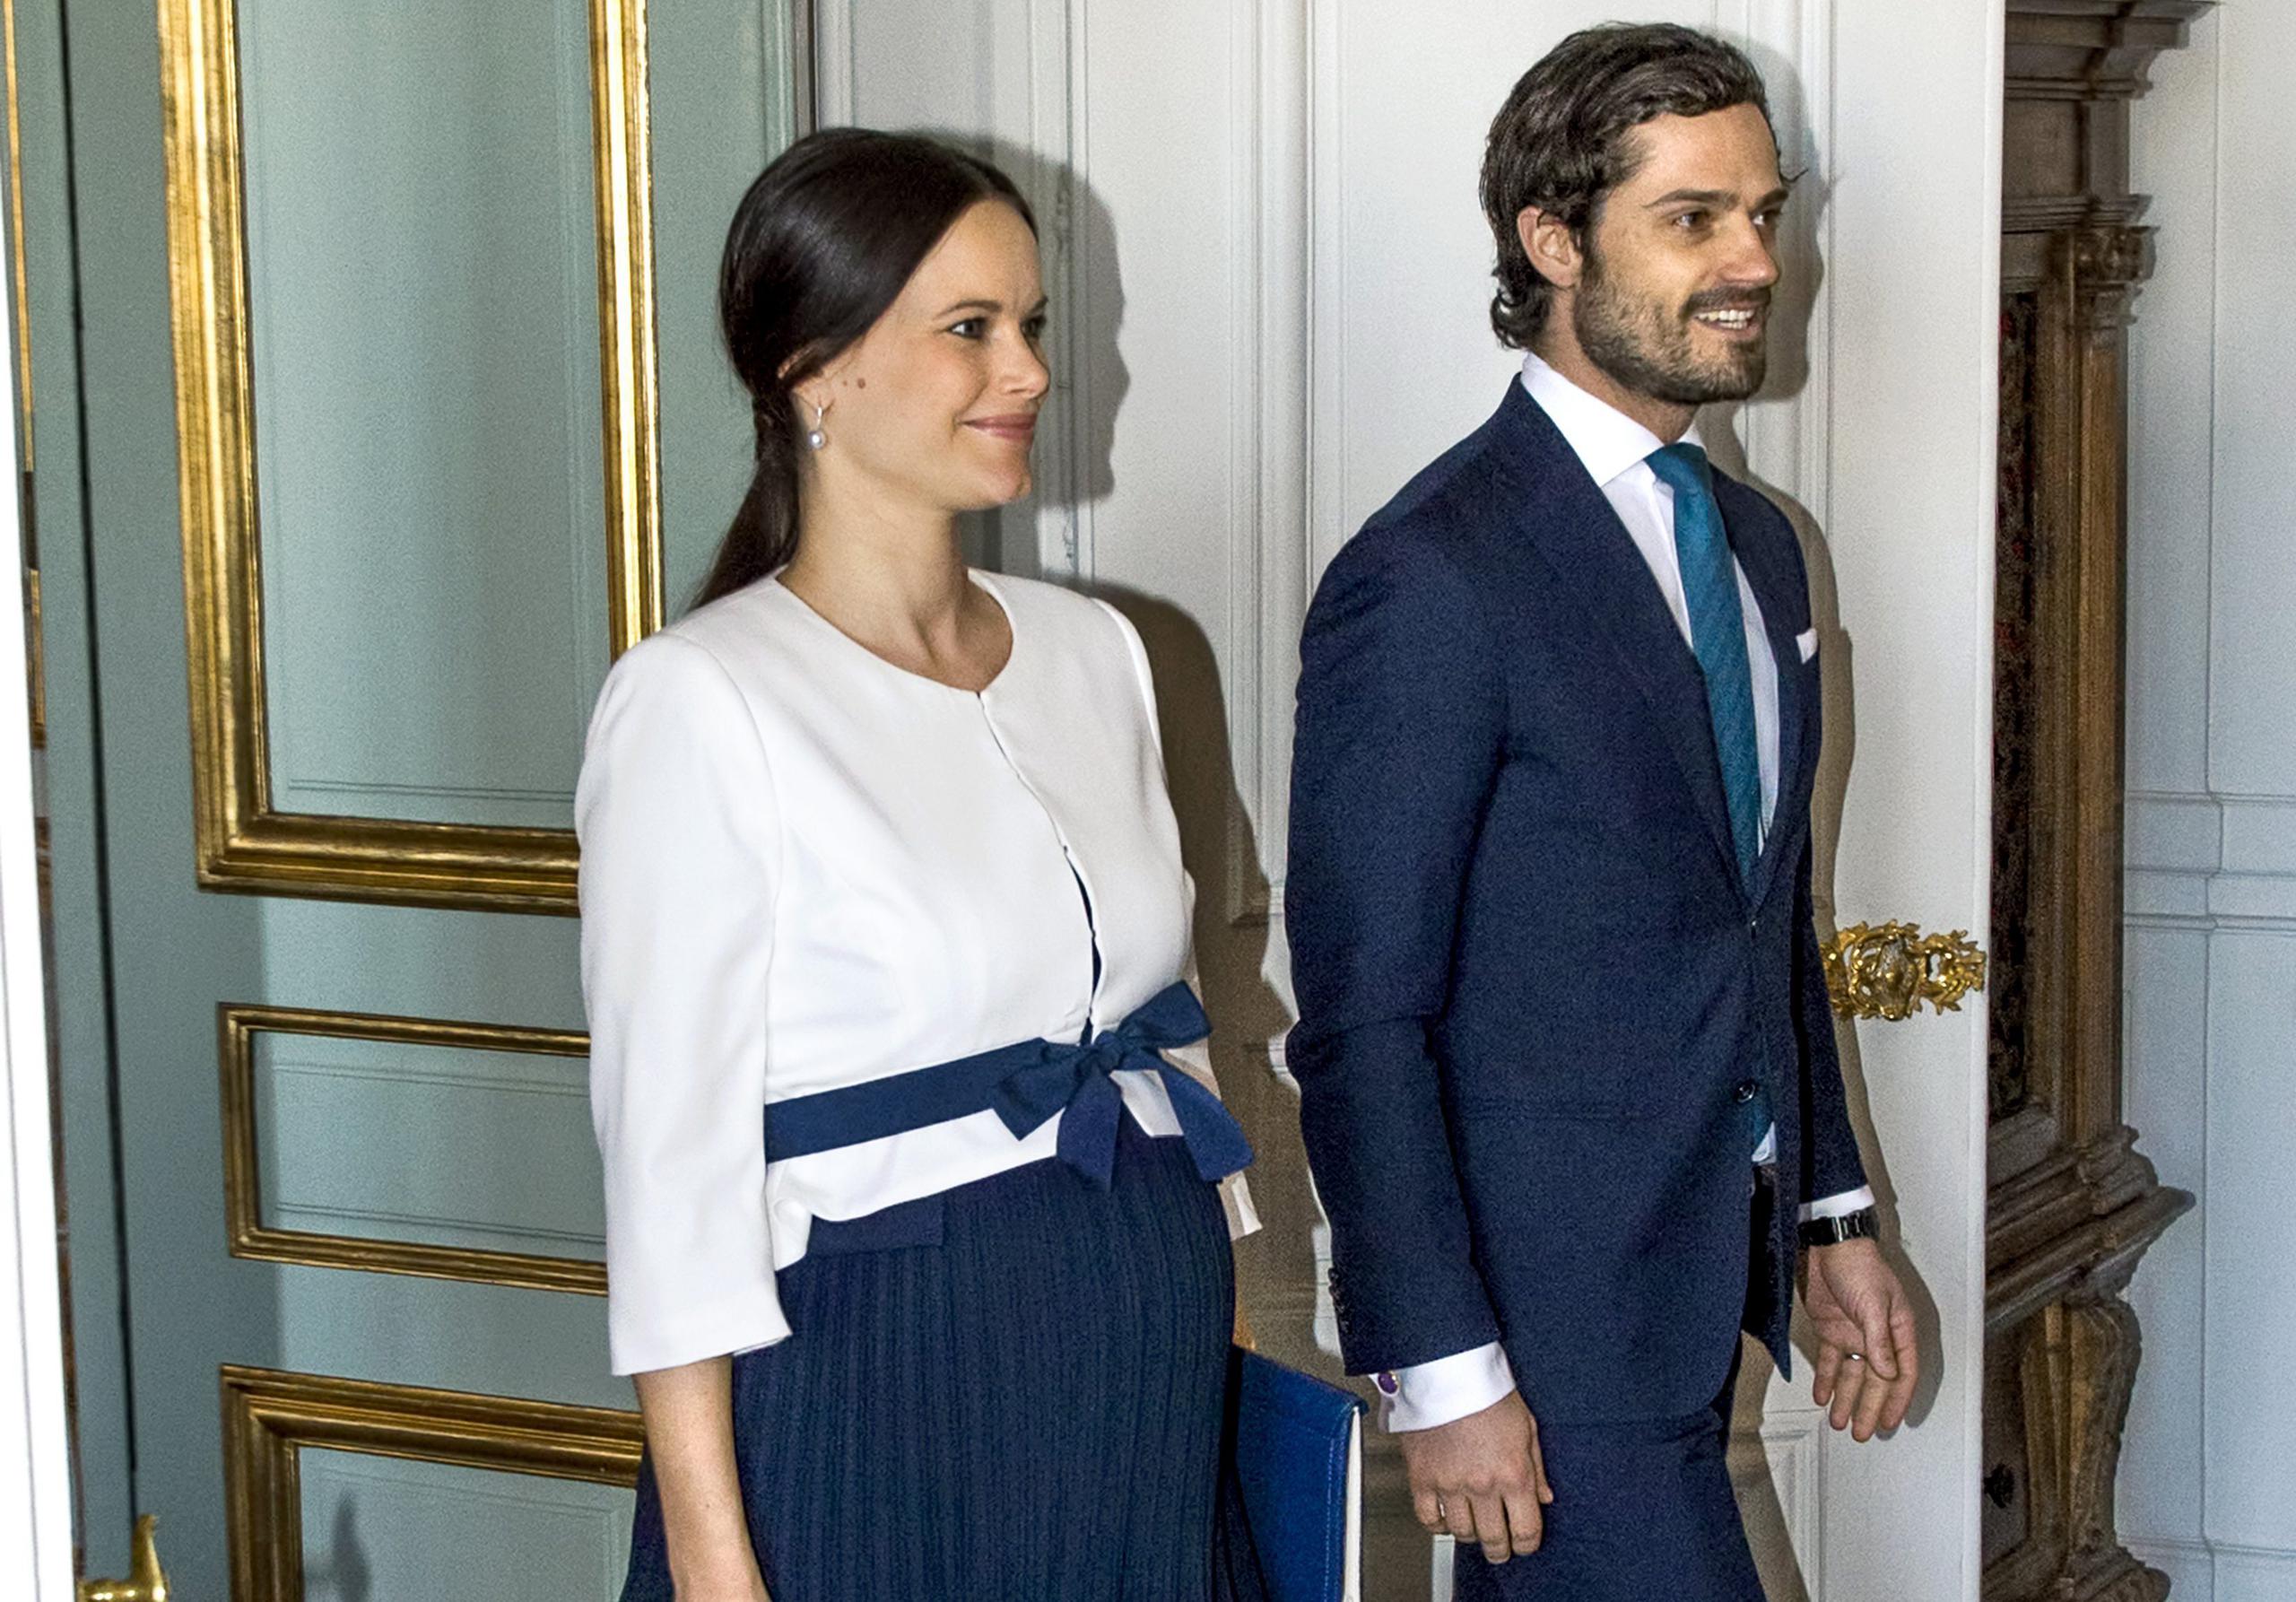 Carlos Felipe, de 41 años, ocupa el cuarto puesto en la línea de sucesión al trono sueco y está casado desde 2015 con Sofía, de 35, con la que tiene dos hijos.